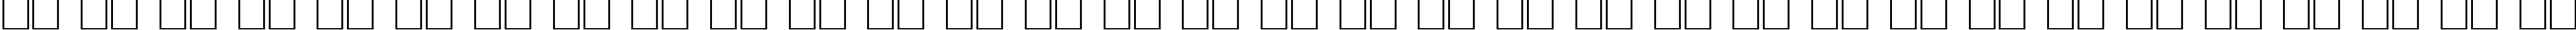 Пример написания русского алфавита шрифтом PresentScript Cyrillic